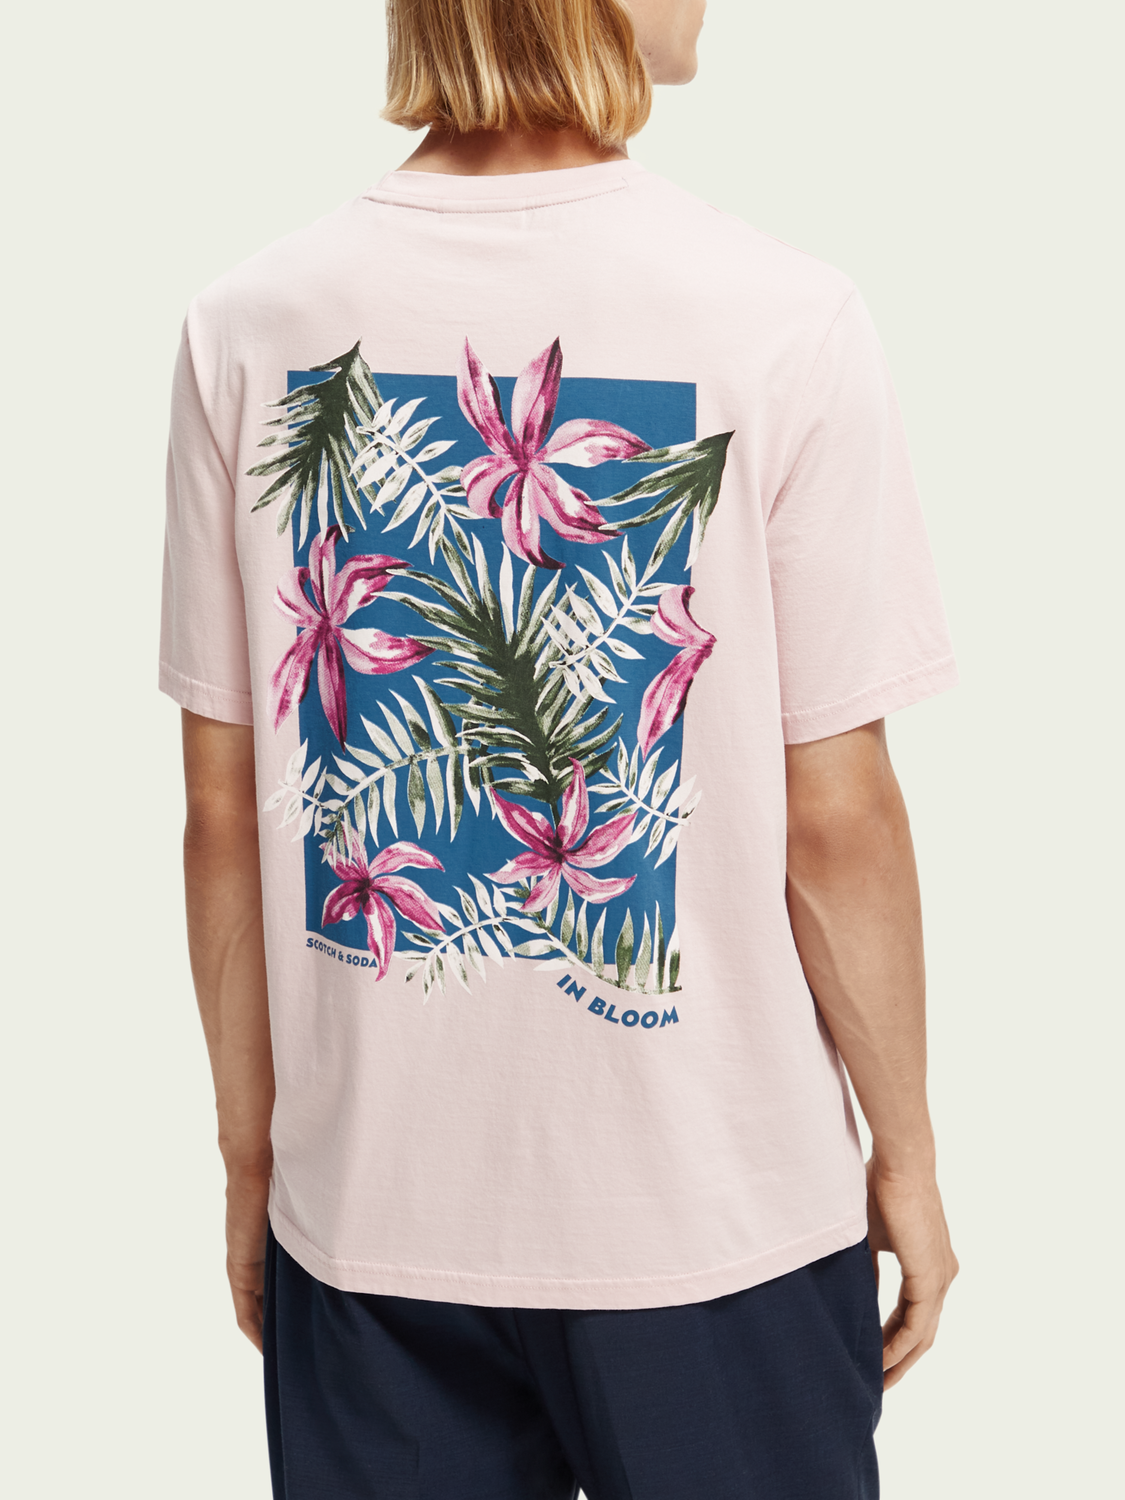 Camiseta regular fit de algodón orgánico con motivo gráfico floral